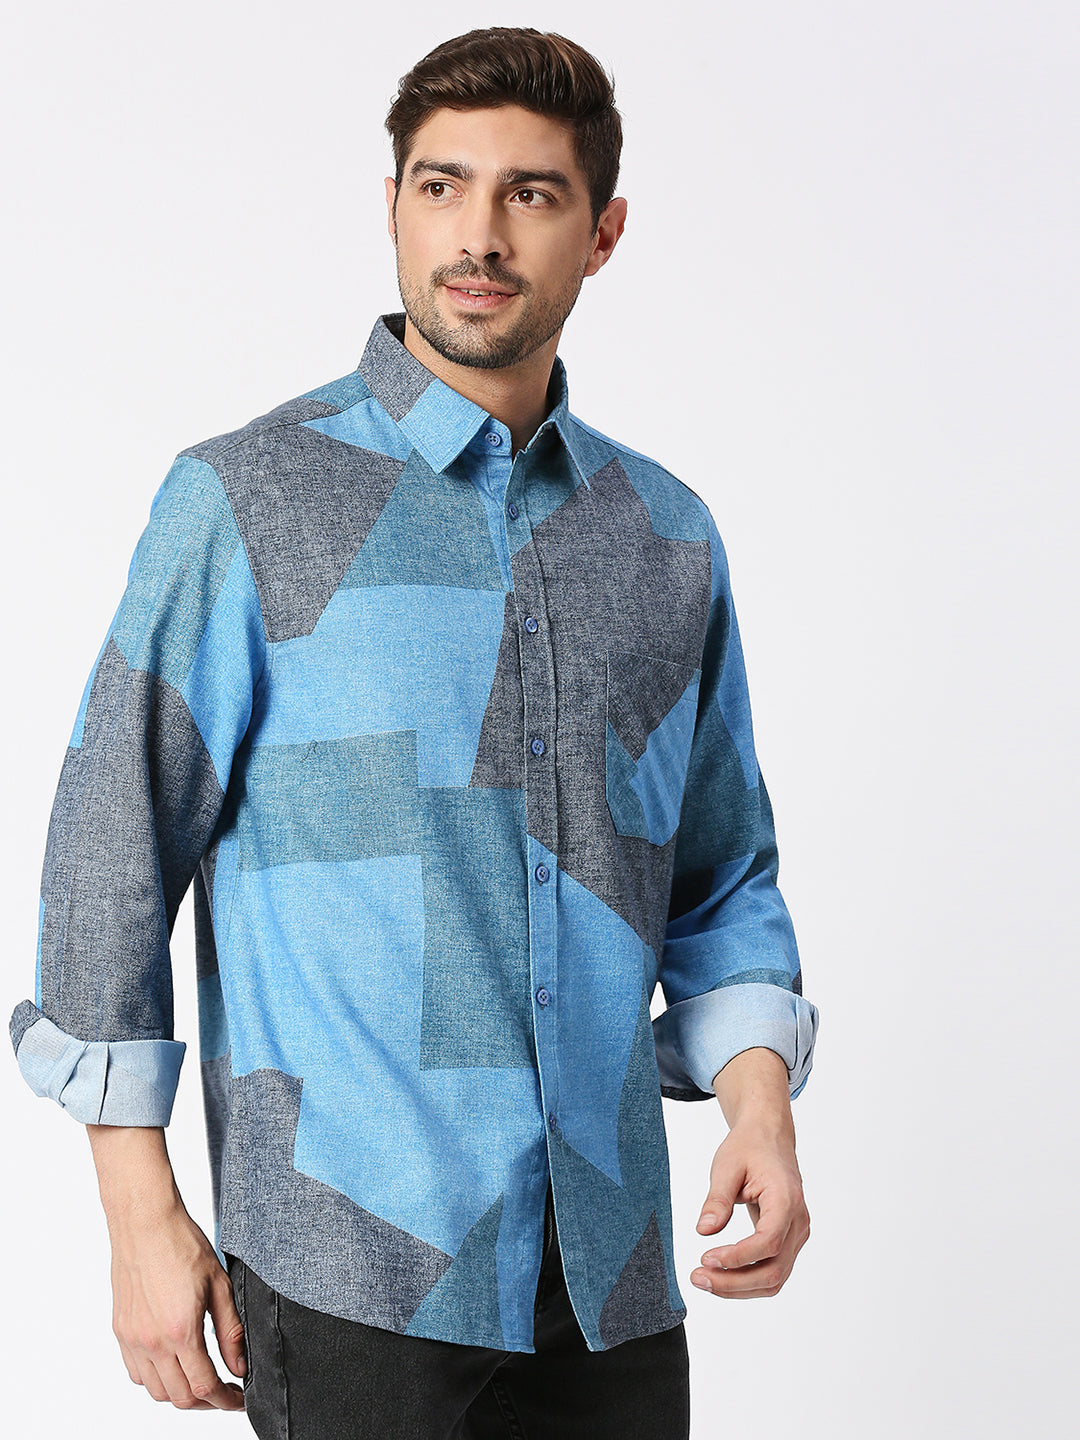 Buy BLAMBLACK Printed Full Sleeves Collar Shirt